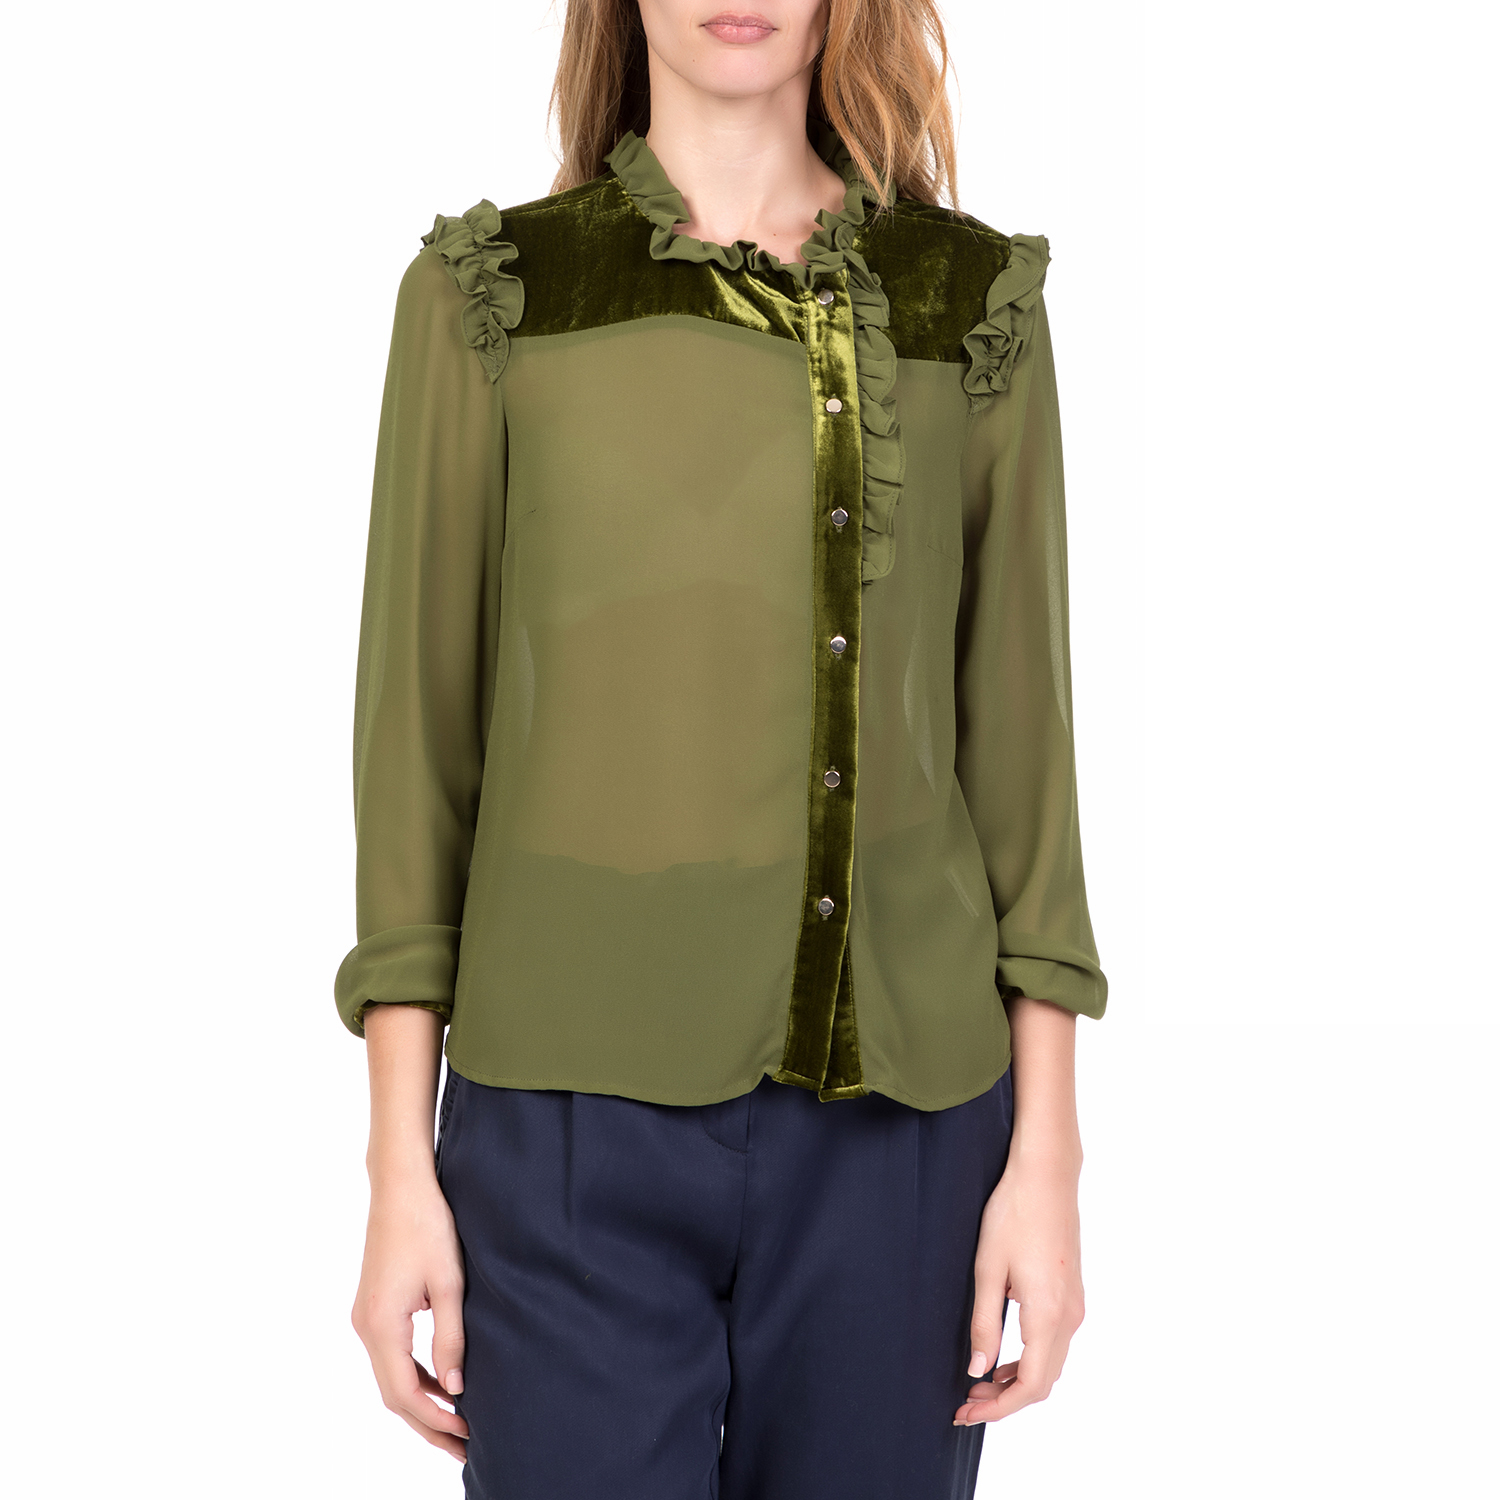 SILVIAN HEACH - Γυναικείο μακρυμάνικο πουκάμισο HIRBESSILVIAN HEACH πράσινο Γυναικεία/Ρούχα/Πουκάμισα/Μακρυμάνικα